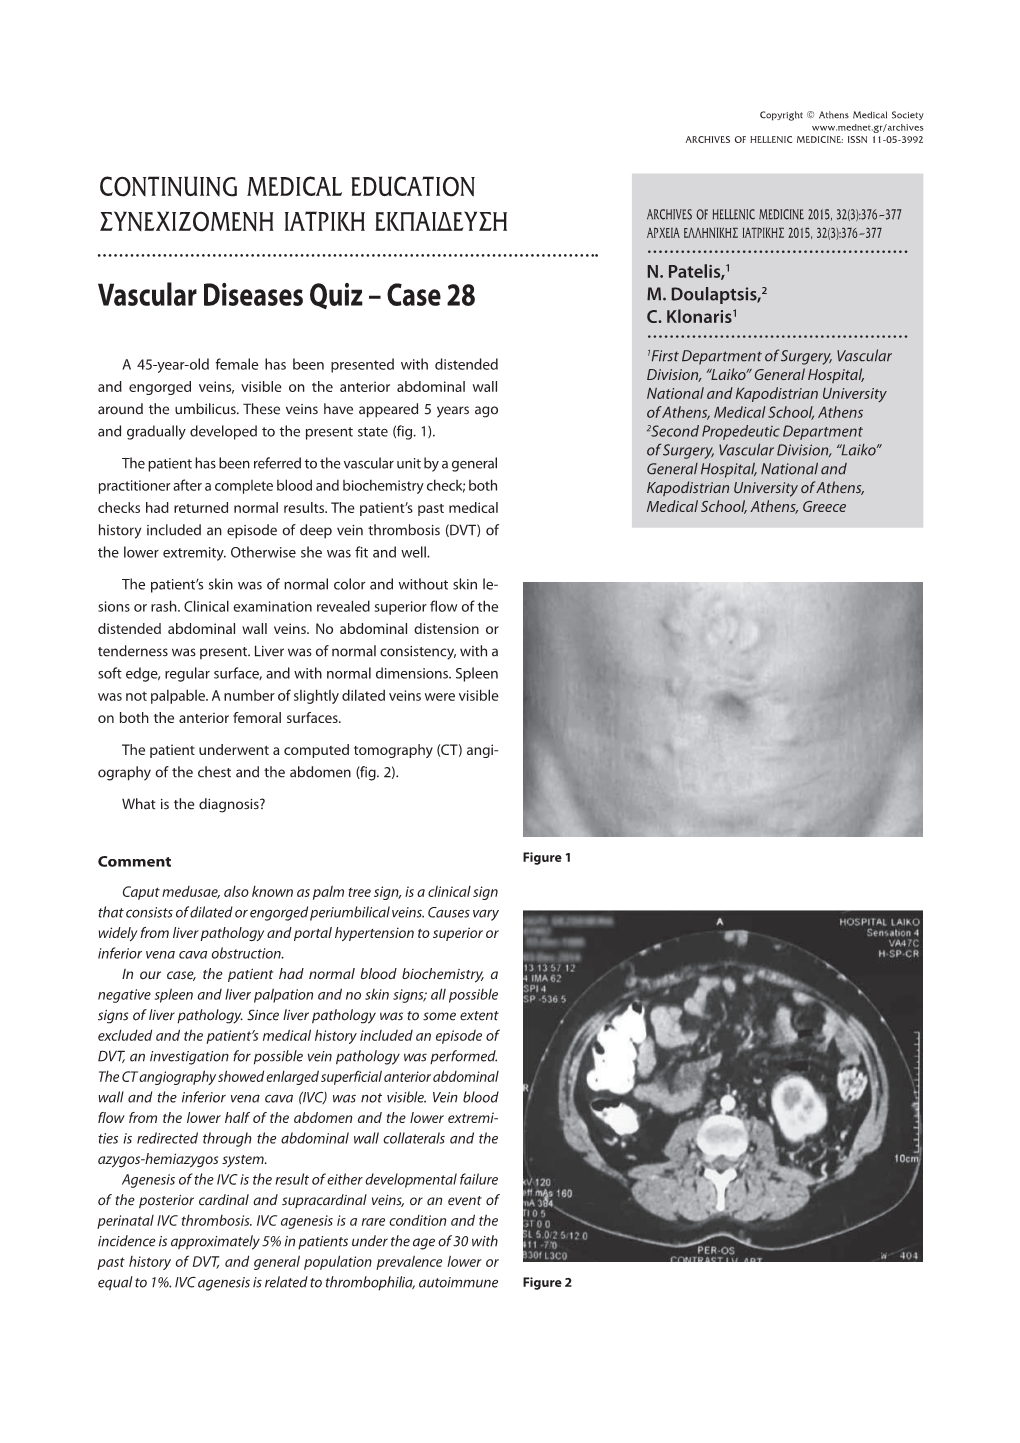 Vascular Diseases Quiz – Case 28 M